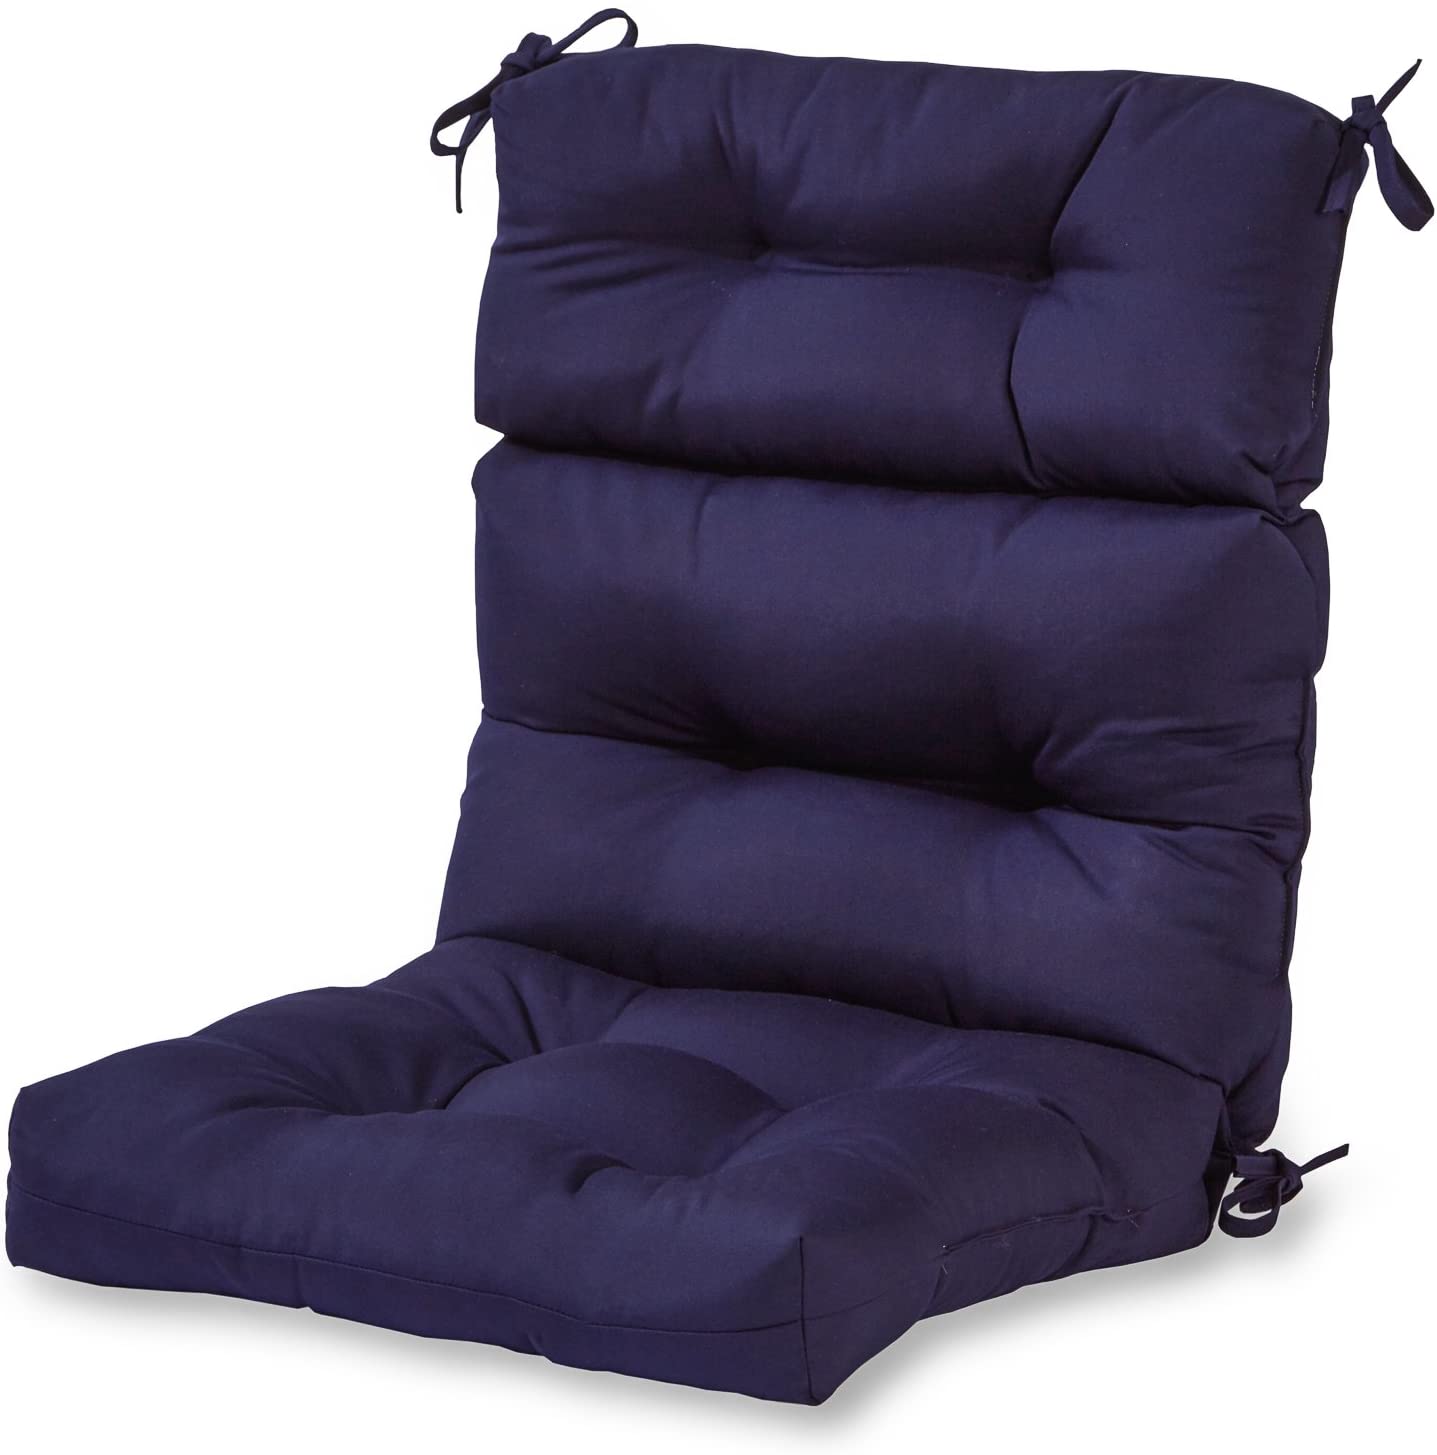 Greendale Home Fashions AZ4809 Polyester Patio Chair Cushion